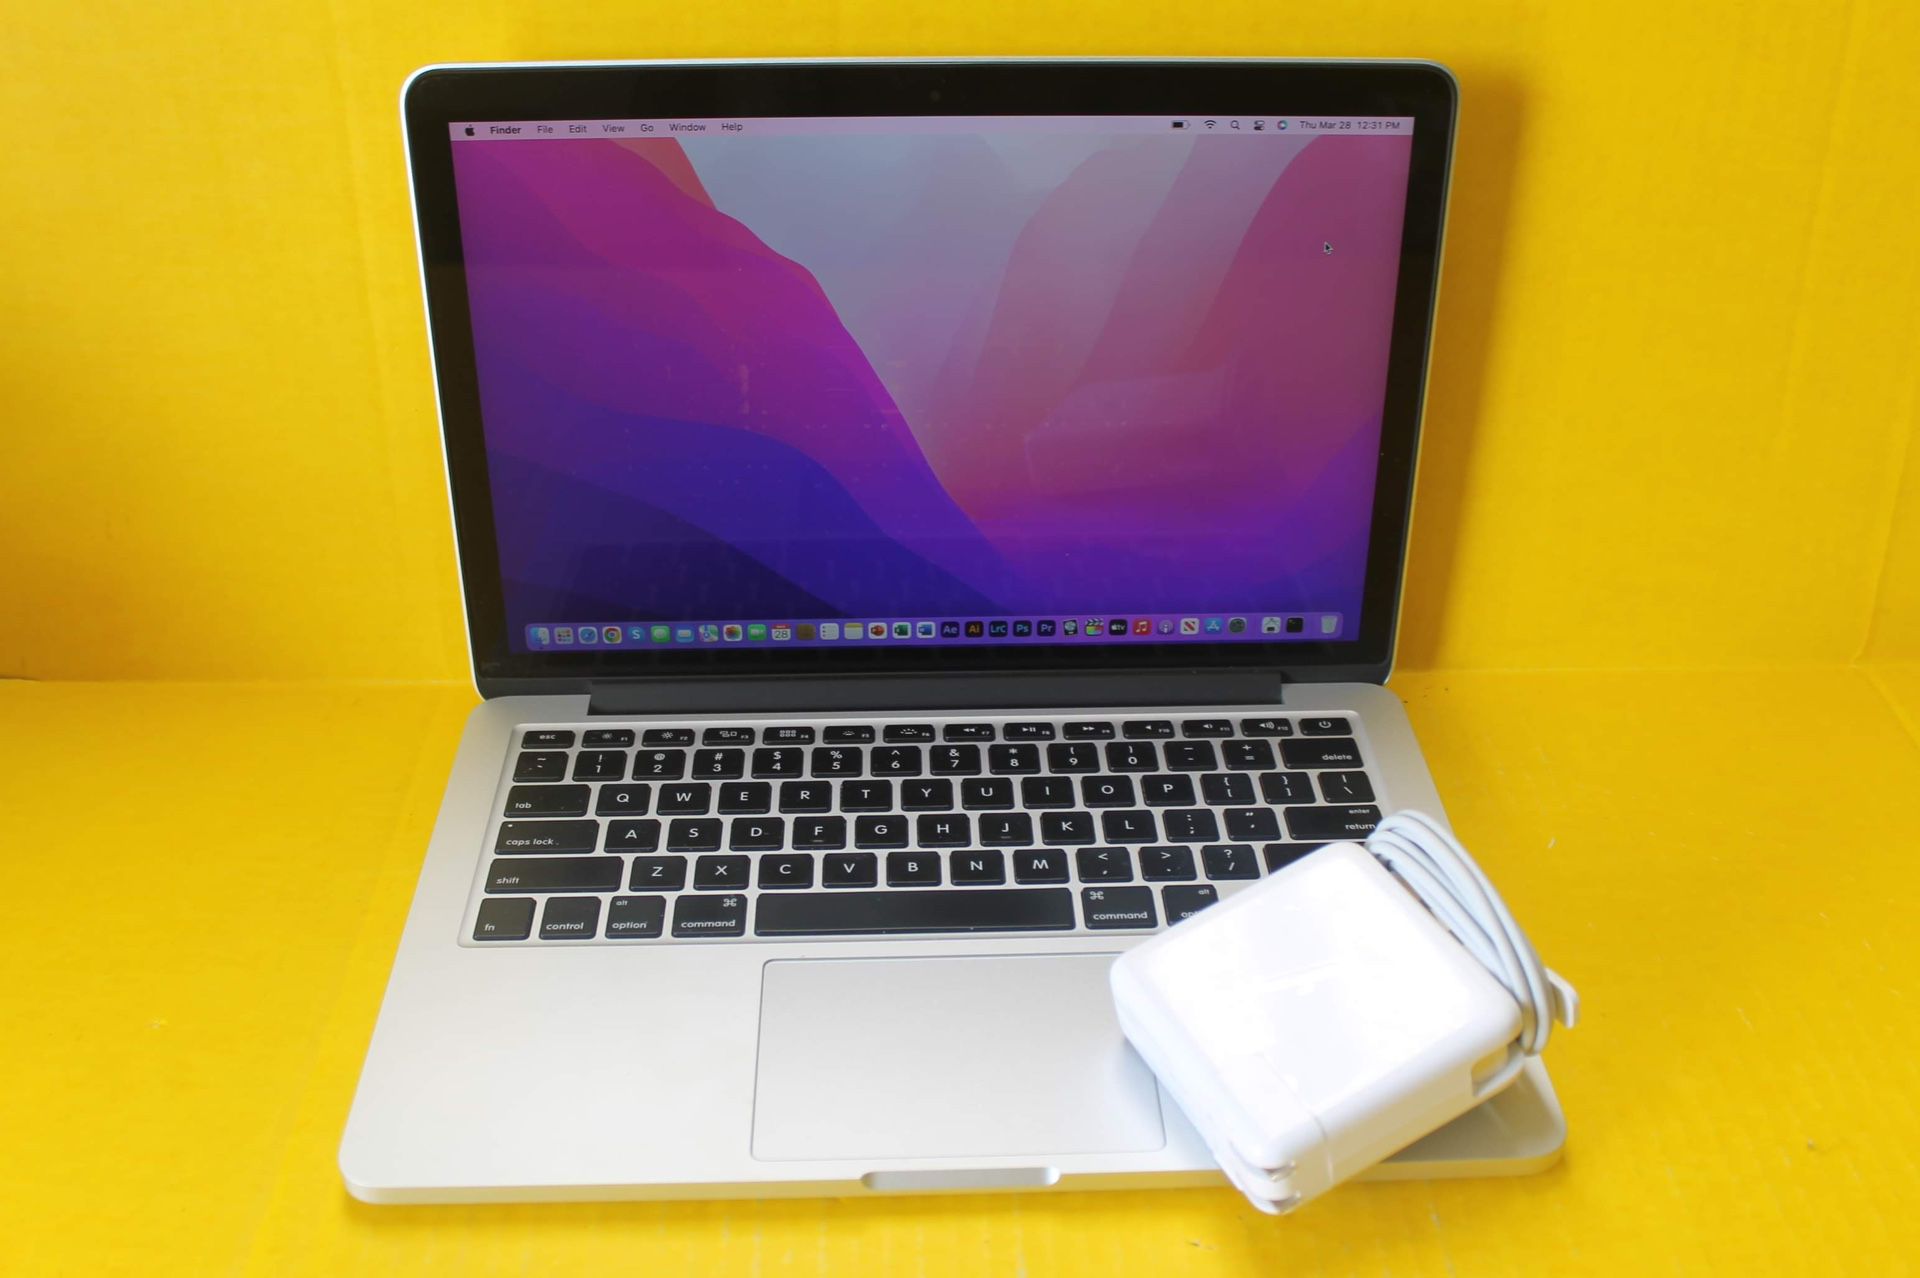 Macbook Pro 13 Retina 2015 i7 2l3.1Ghz 16GB 500GB Flash Storage #B2